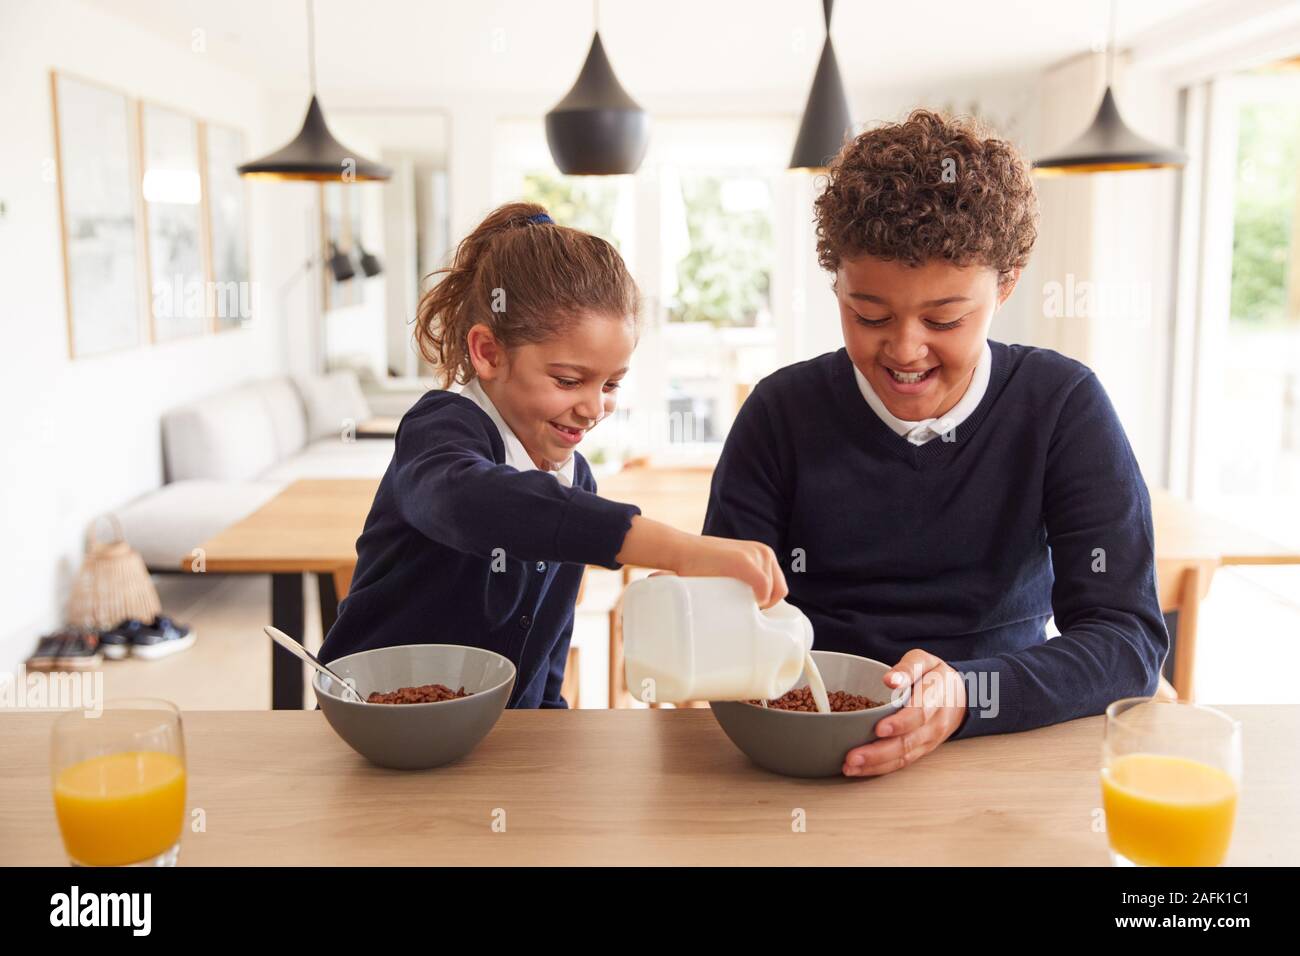 Kinder In der Küche Essen der zuckerhaltigen Frühstück, bevor Sie in die Schule gehen Stockfoto